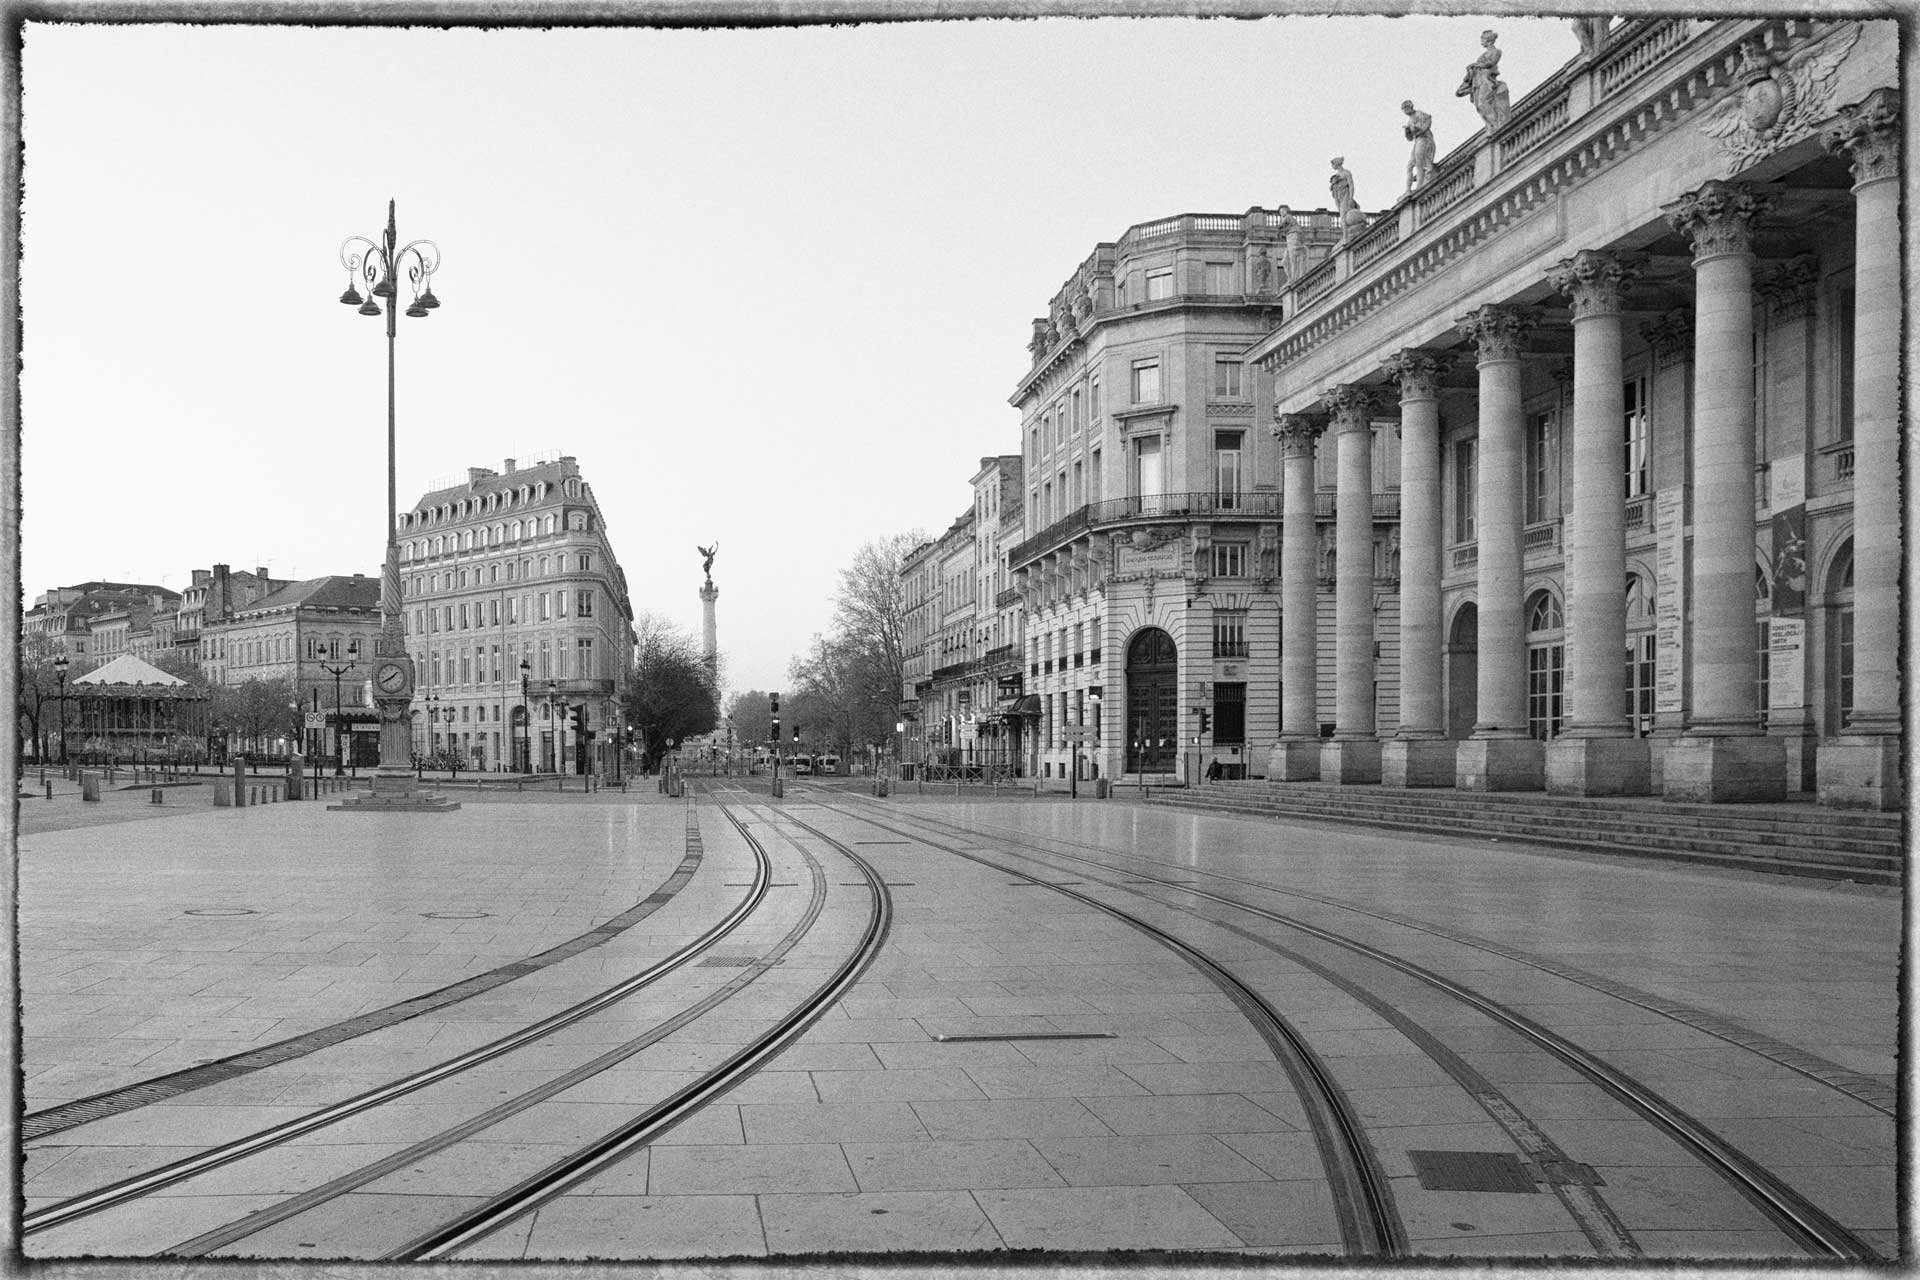 La place devant Grand Théâtre vide, pendant le confinement lié au Covid, laissant les lignes de tram apparentes.